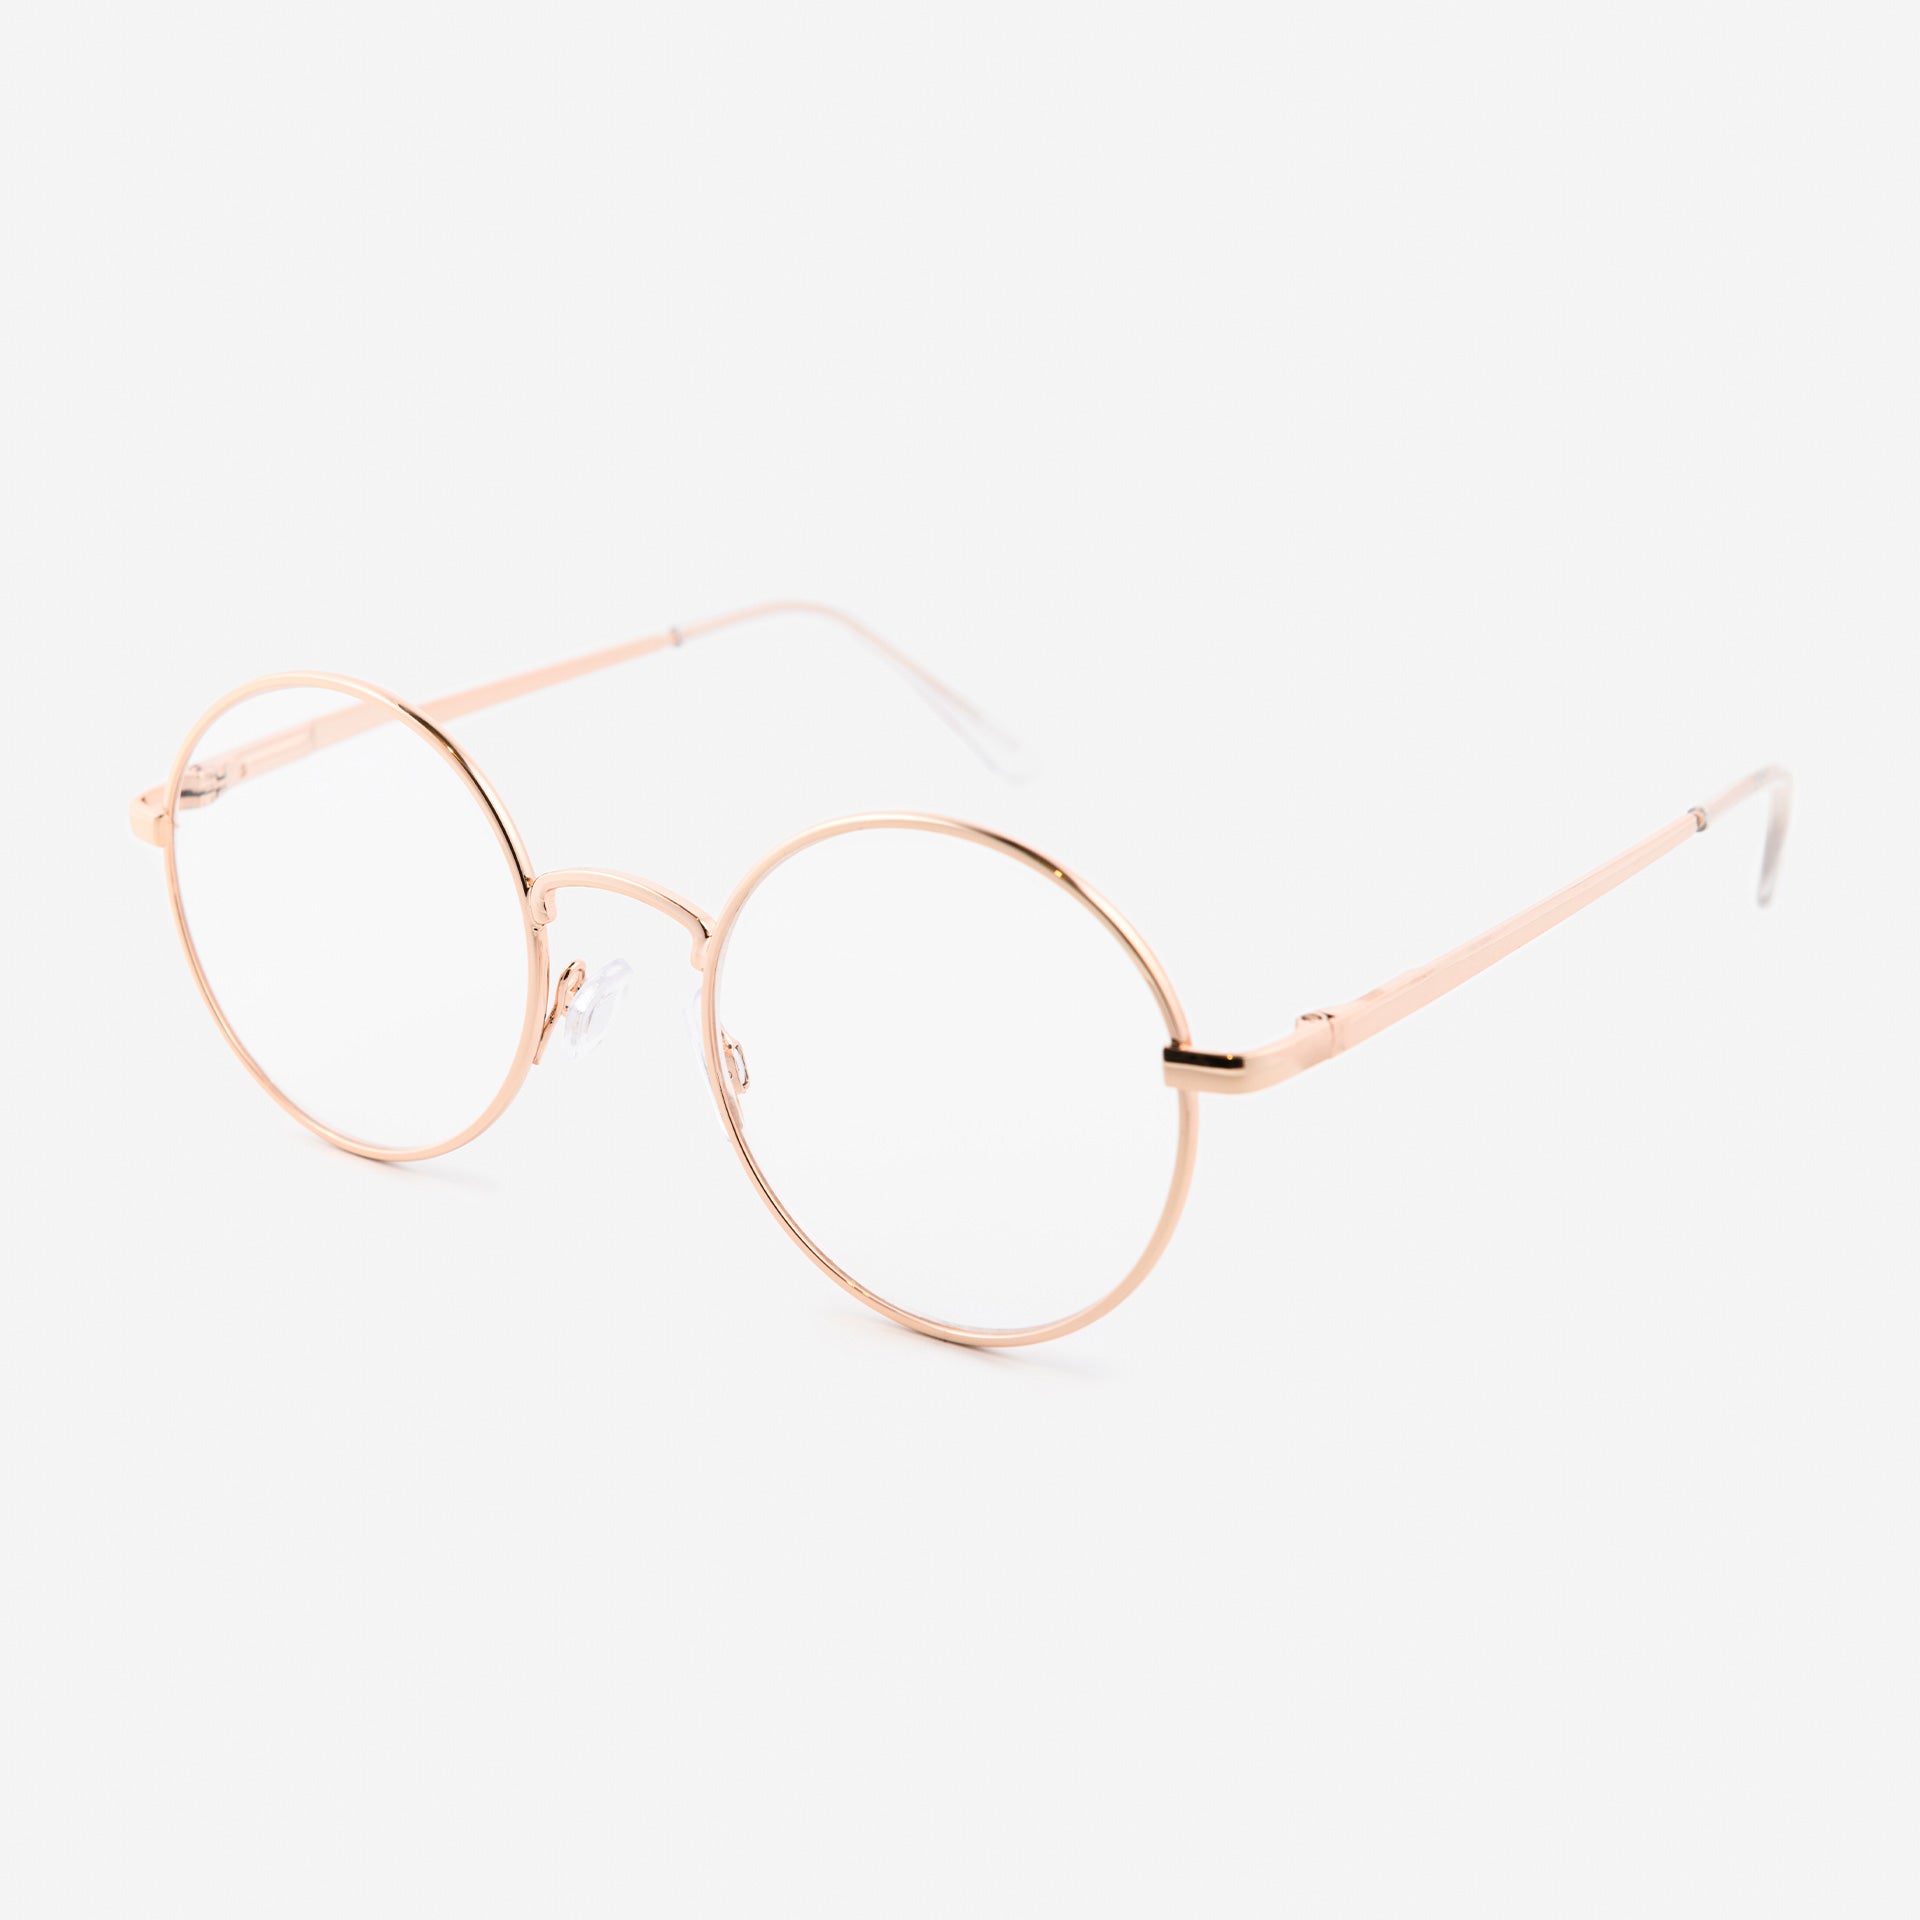 Lunettes de vue +9, 0 - lunettes de lecture unisexes - lunettes  universelles avec étui